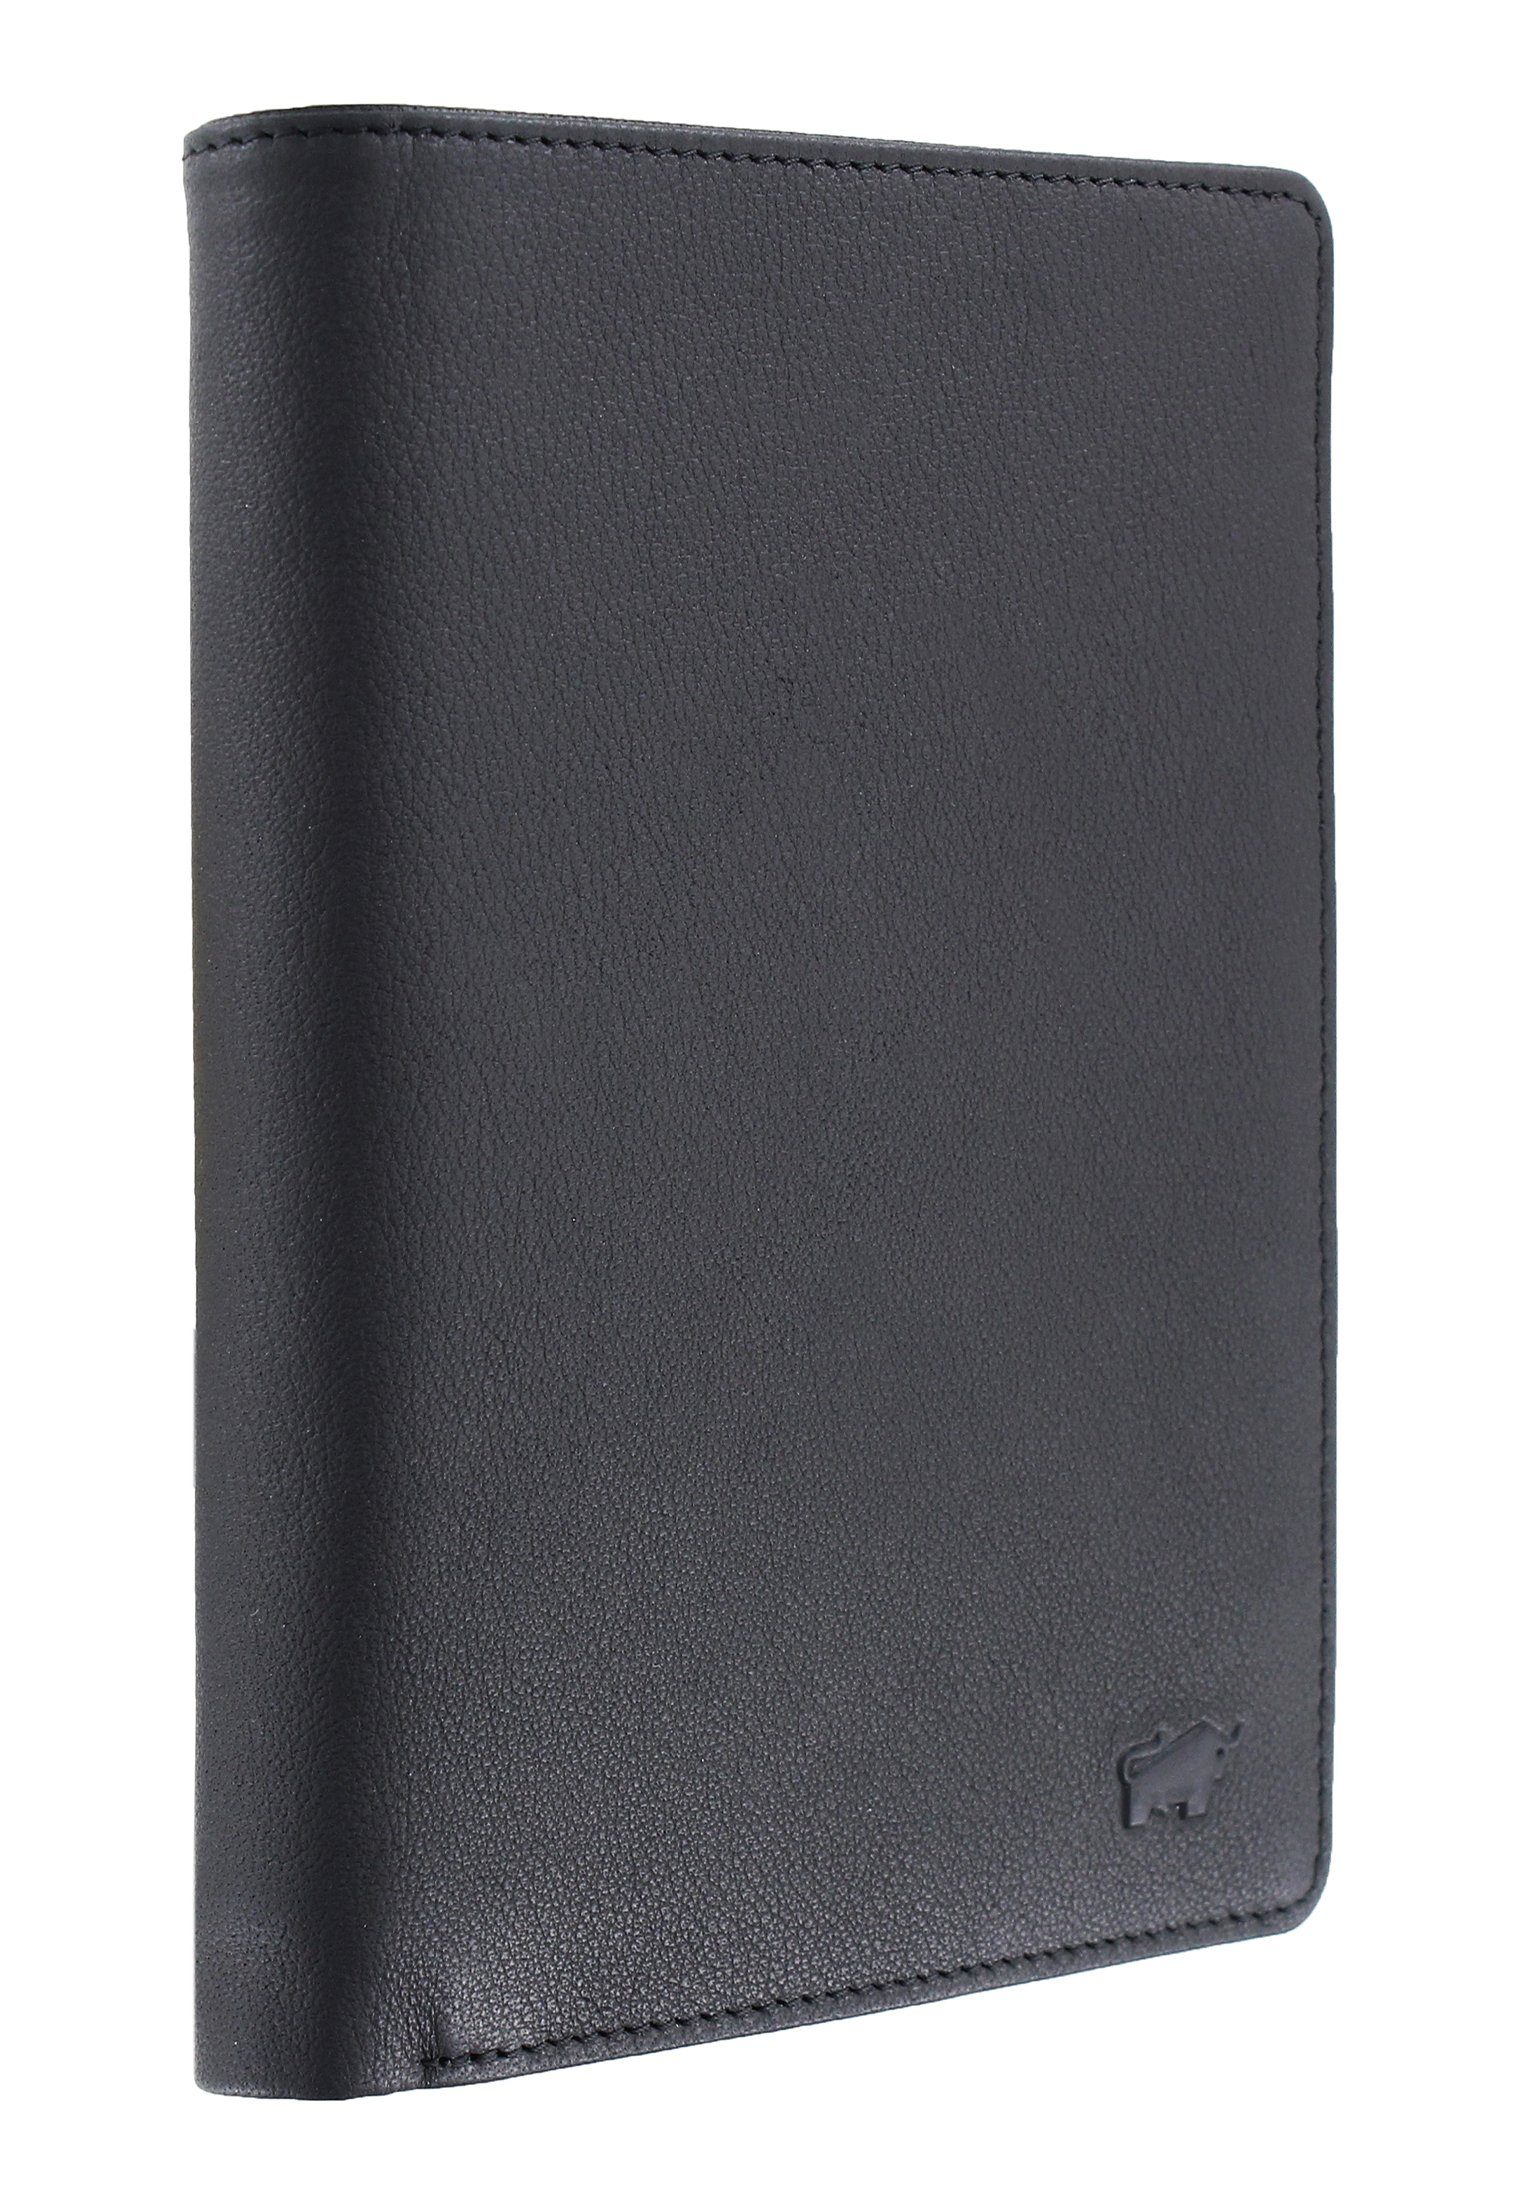 ARIZONA Braun Stauraum, in Brieftasche viel schwarz, 20CS Brieftasche mit Germany Büffel Made 2.0